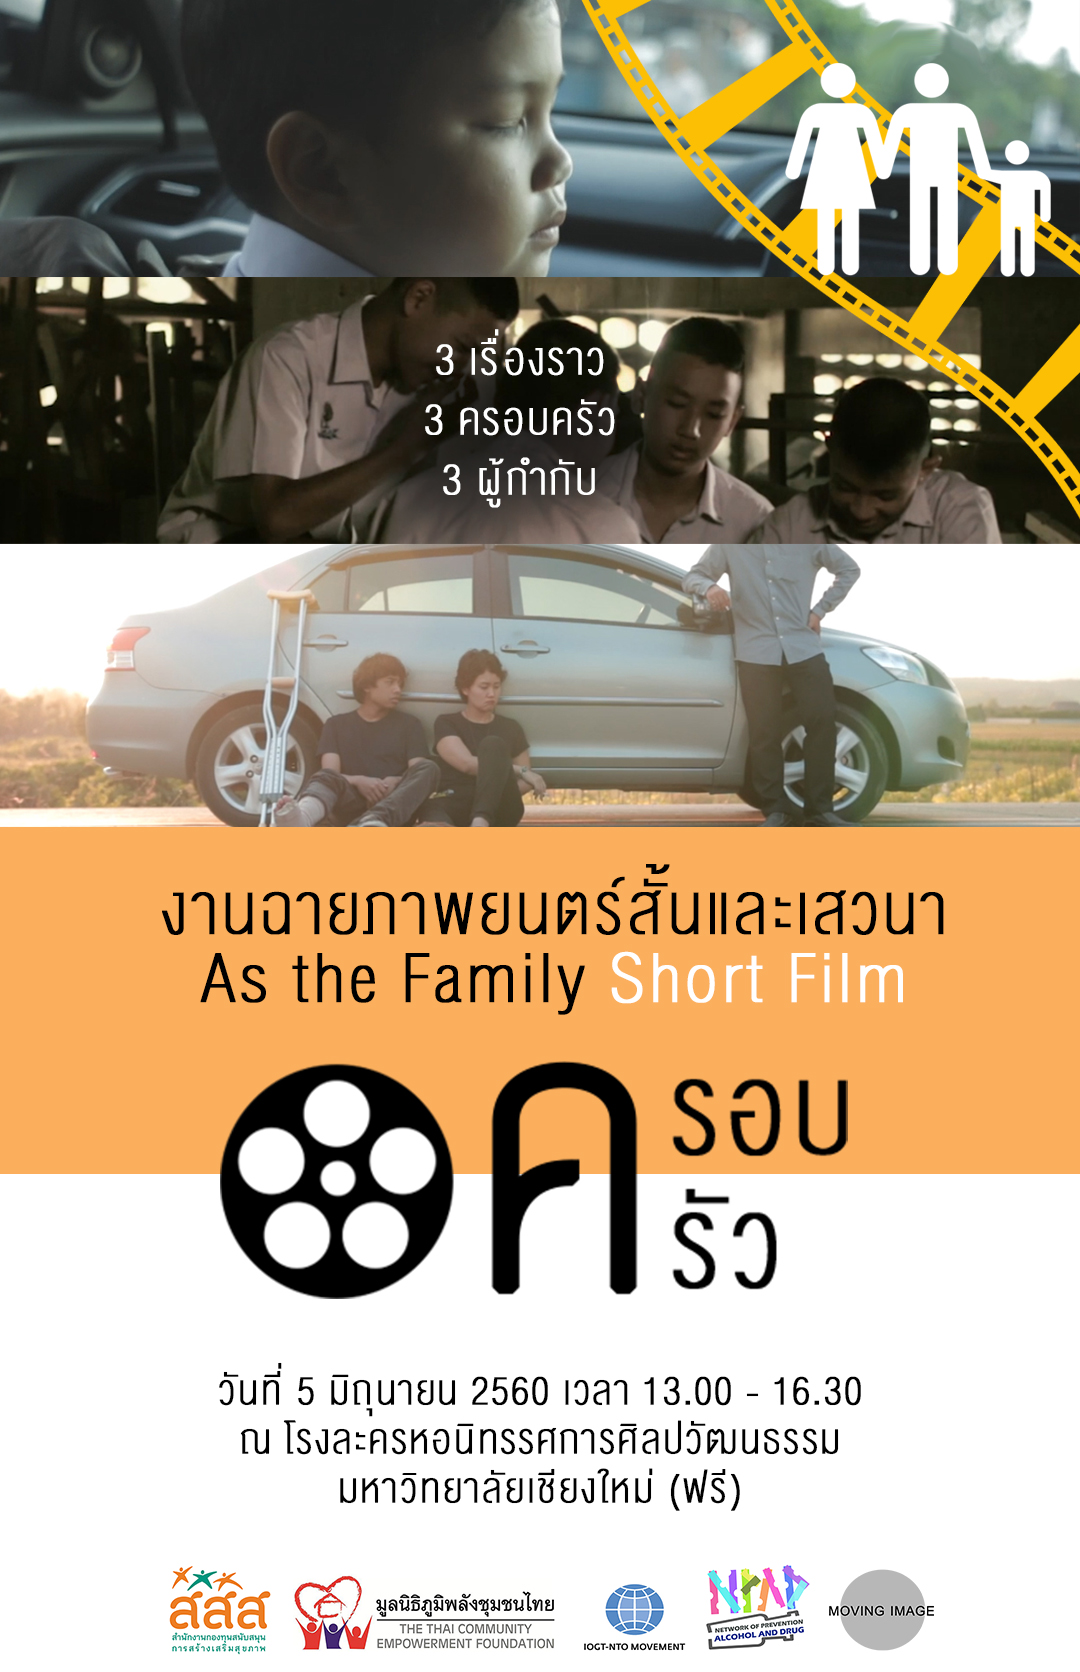 3 หนังสั้น นำเสนอในประเด็นครอบครัว thaihealth